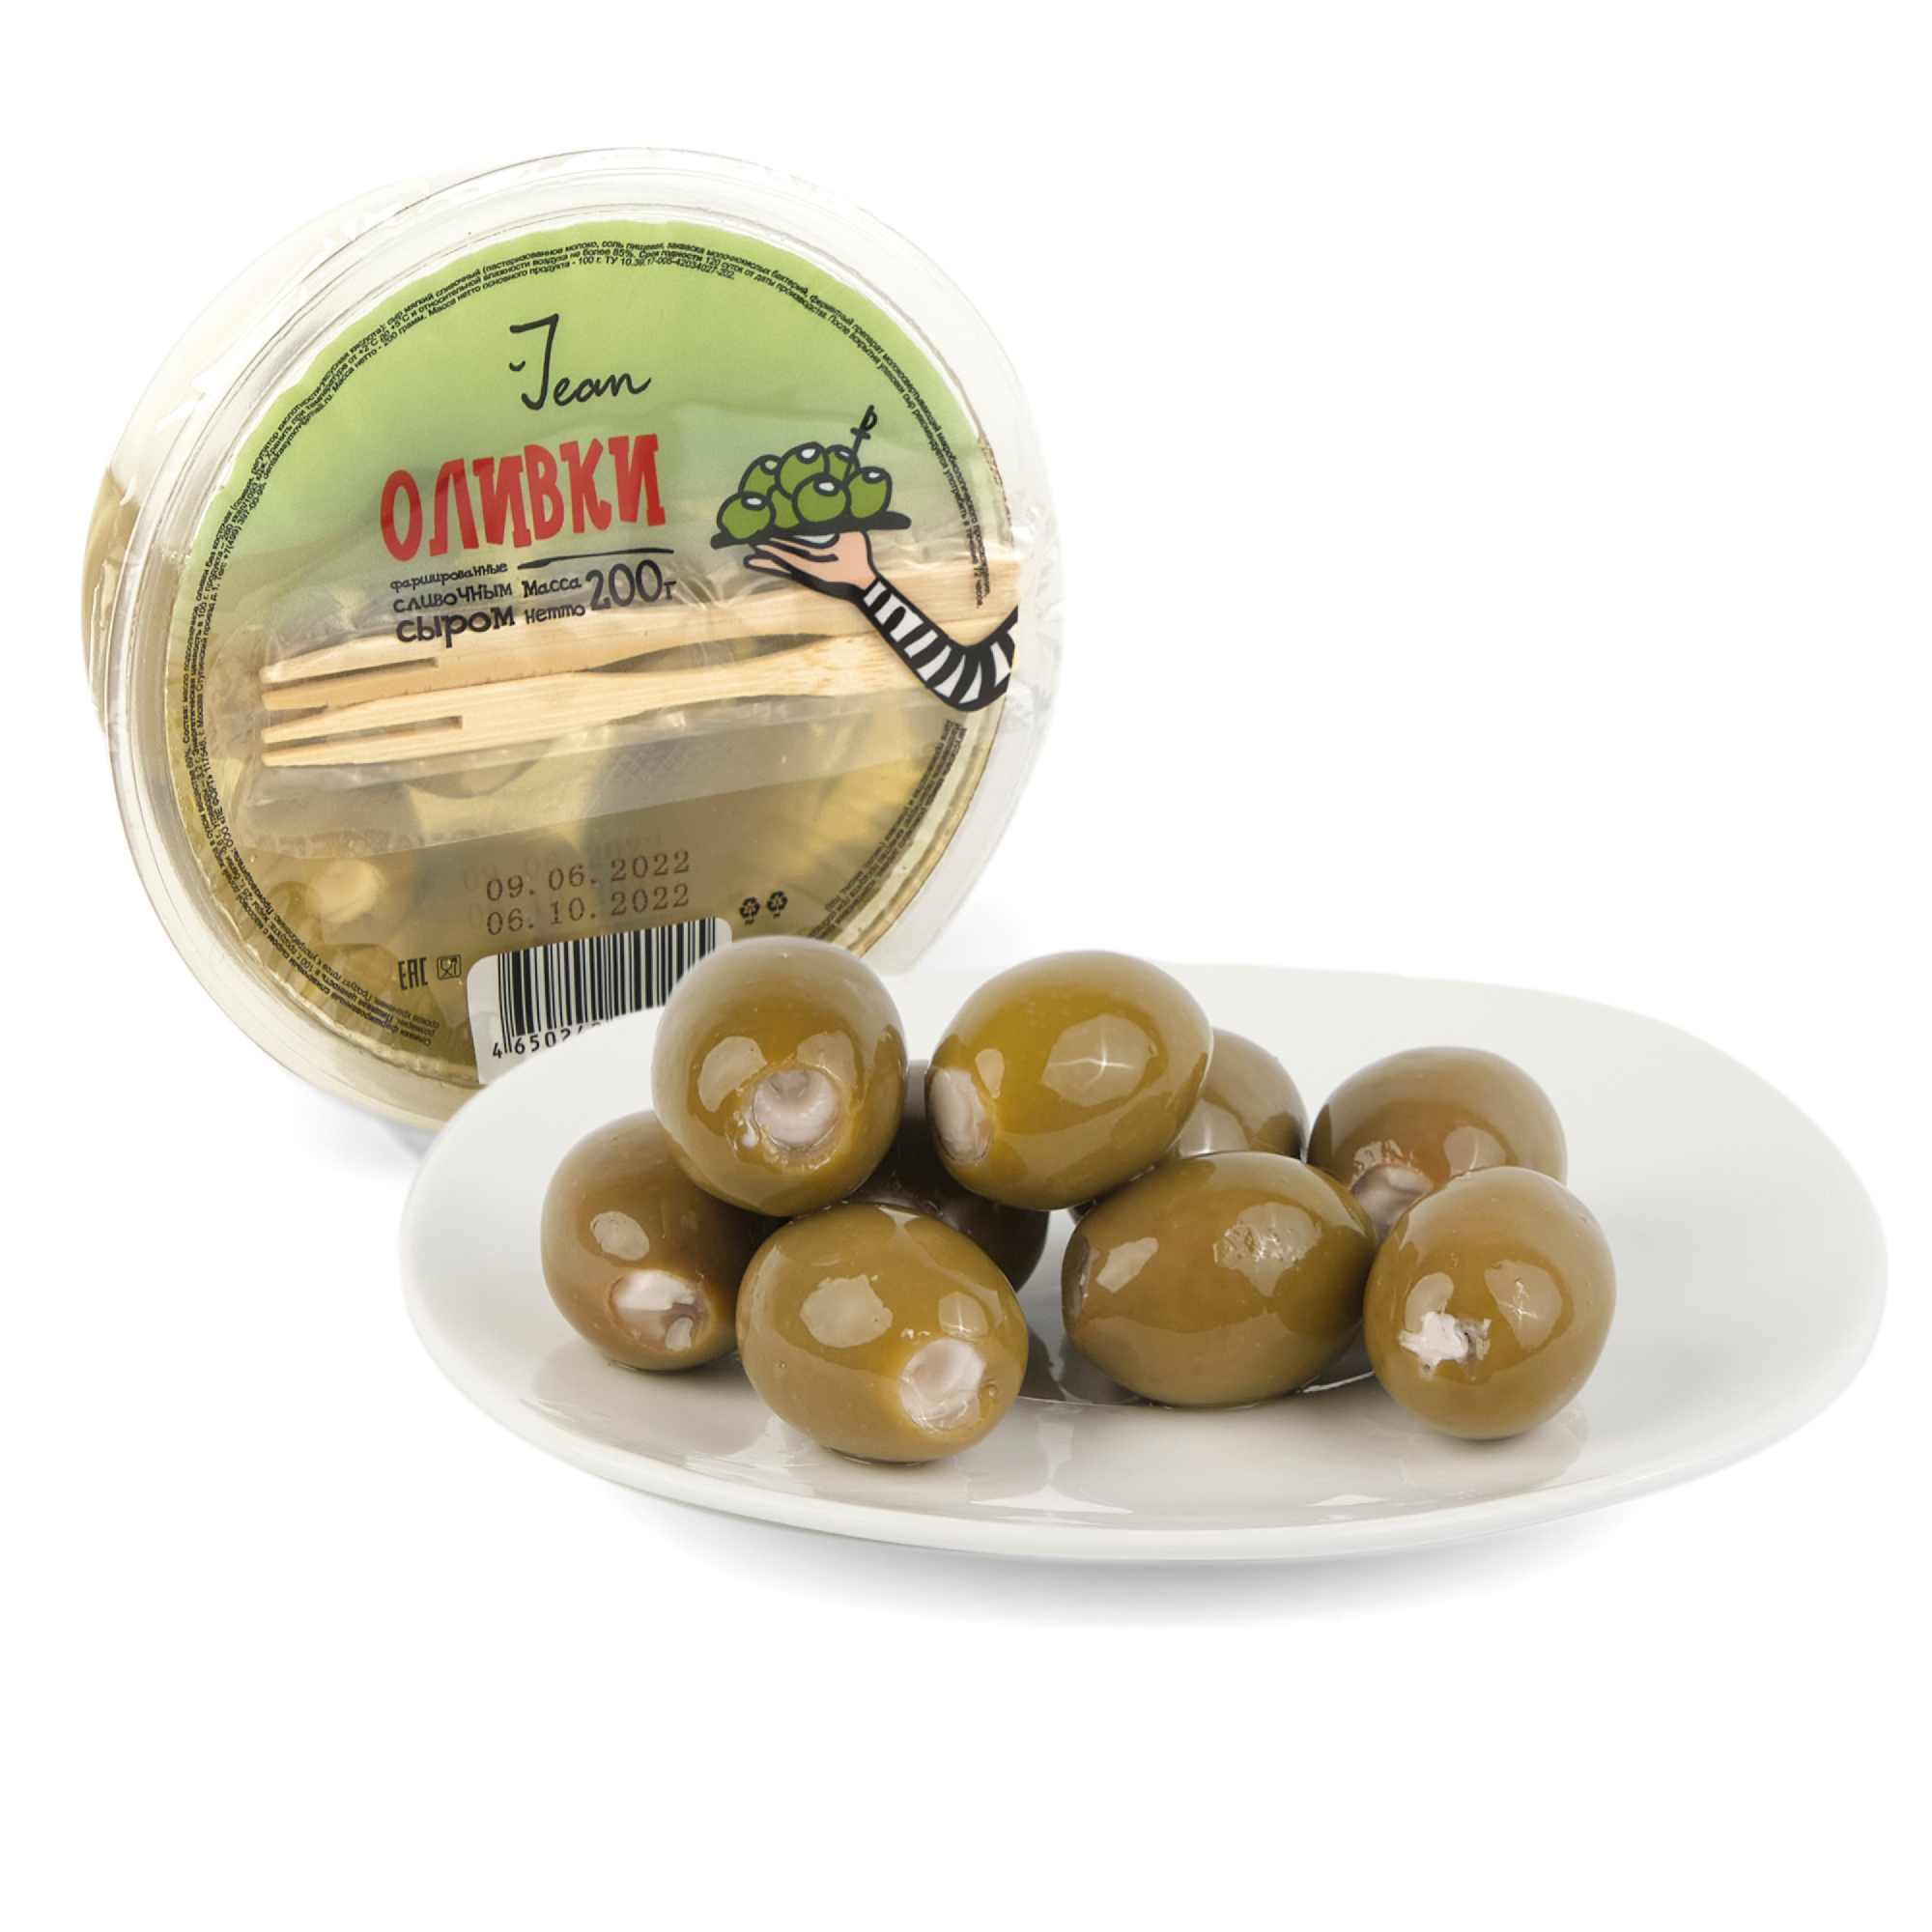 Фаршированные оливки Jean сливочным сыром, 200 г оливки ellenika фаршированные сливочным сыром в масле 130 г